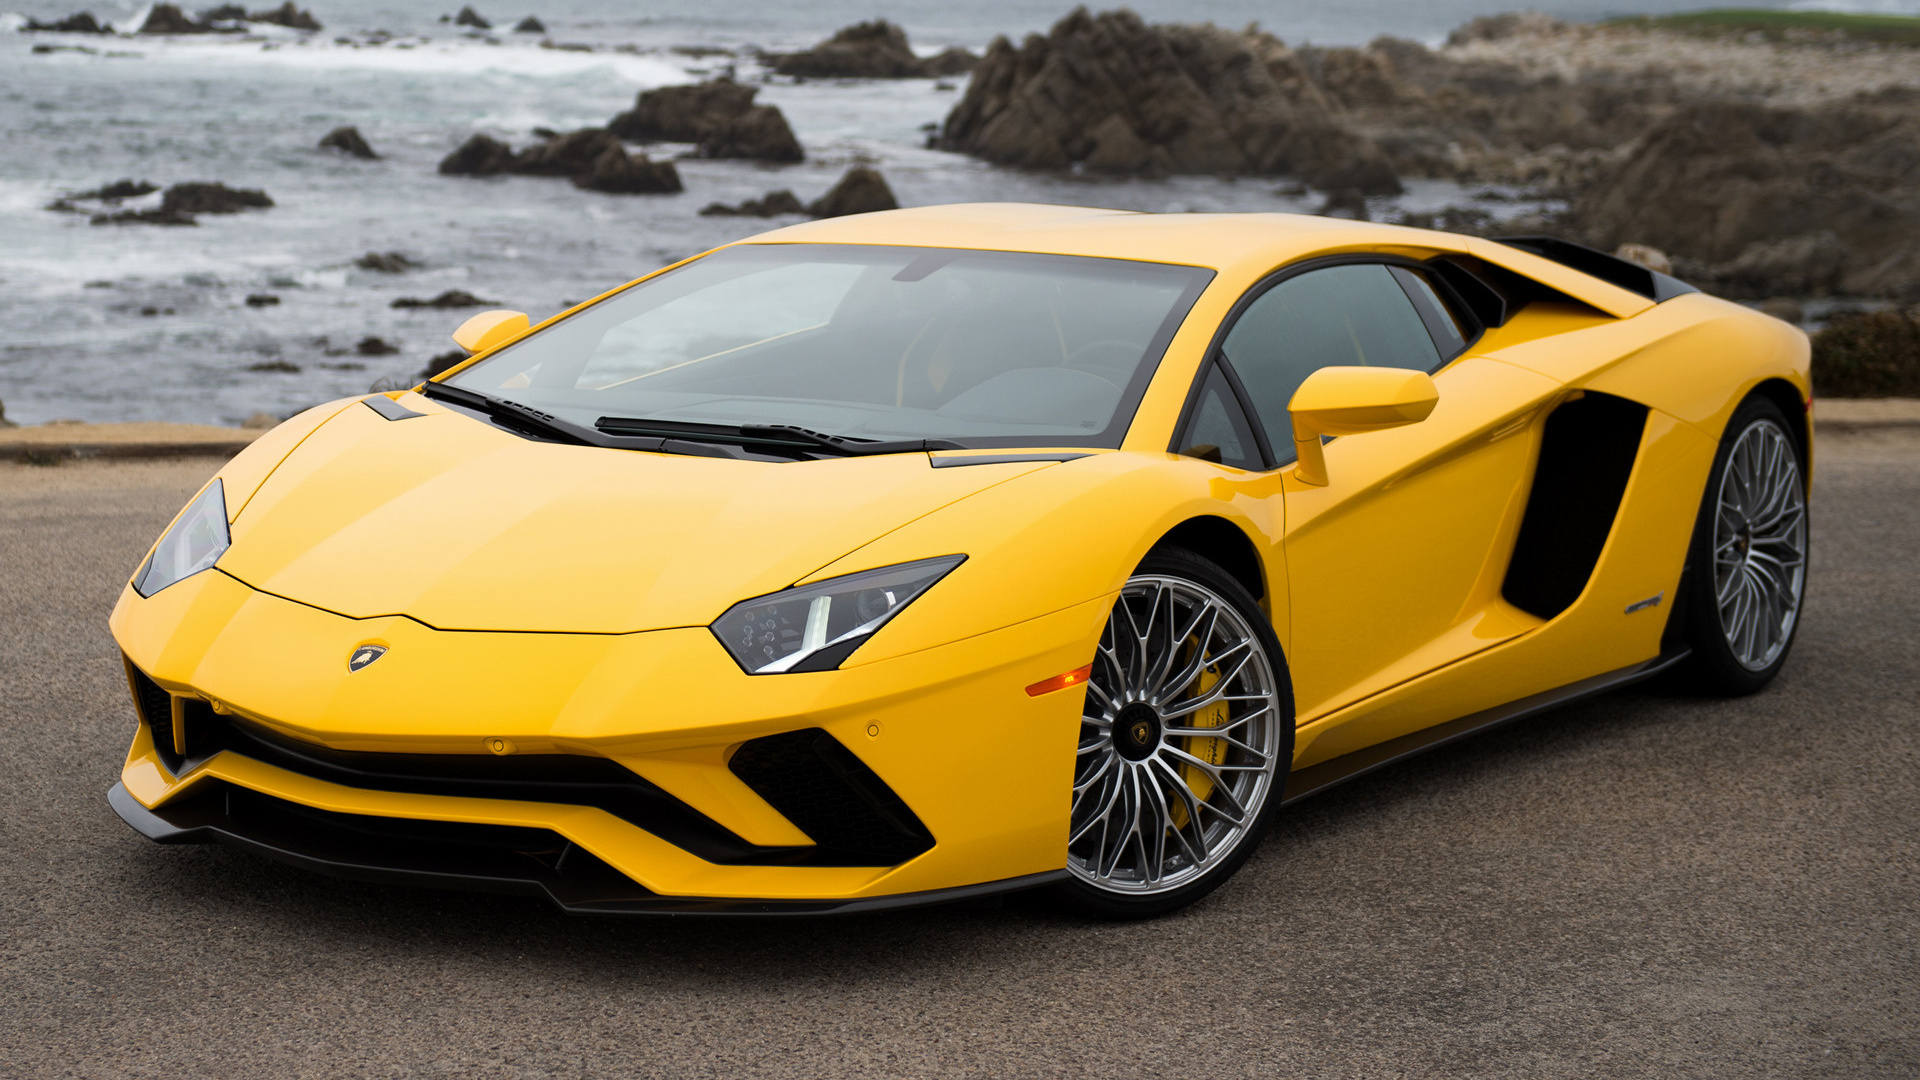 Lamborghini Aventador Wallpaper Hd Yellow